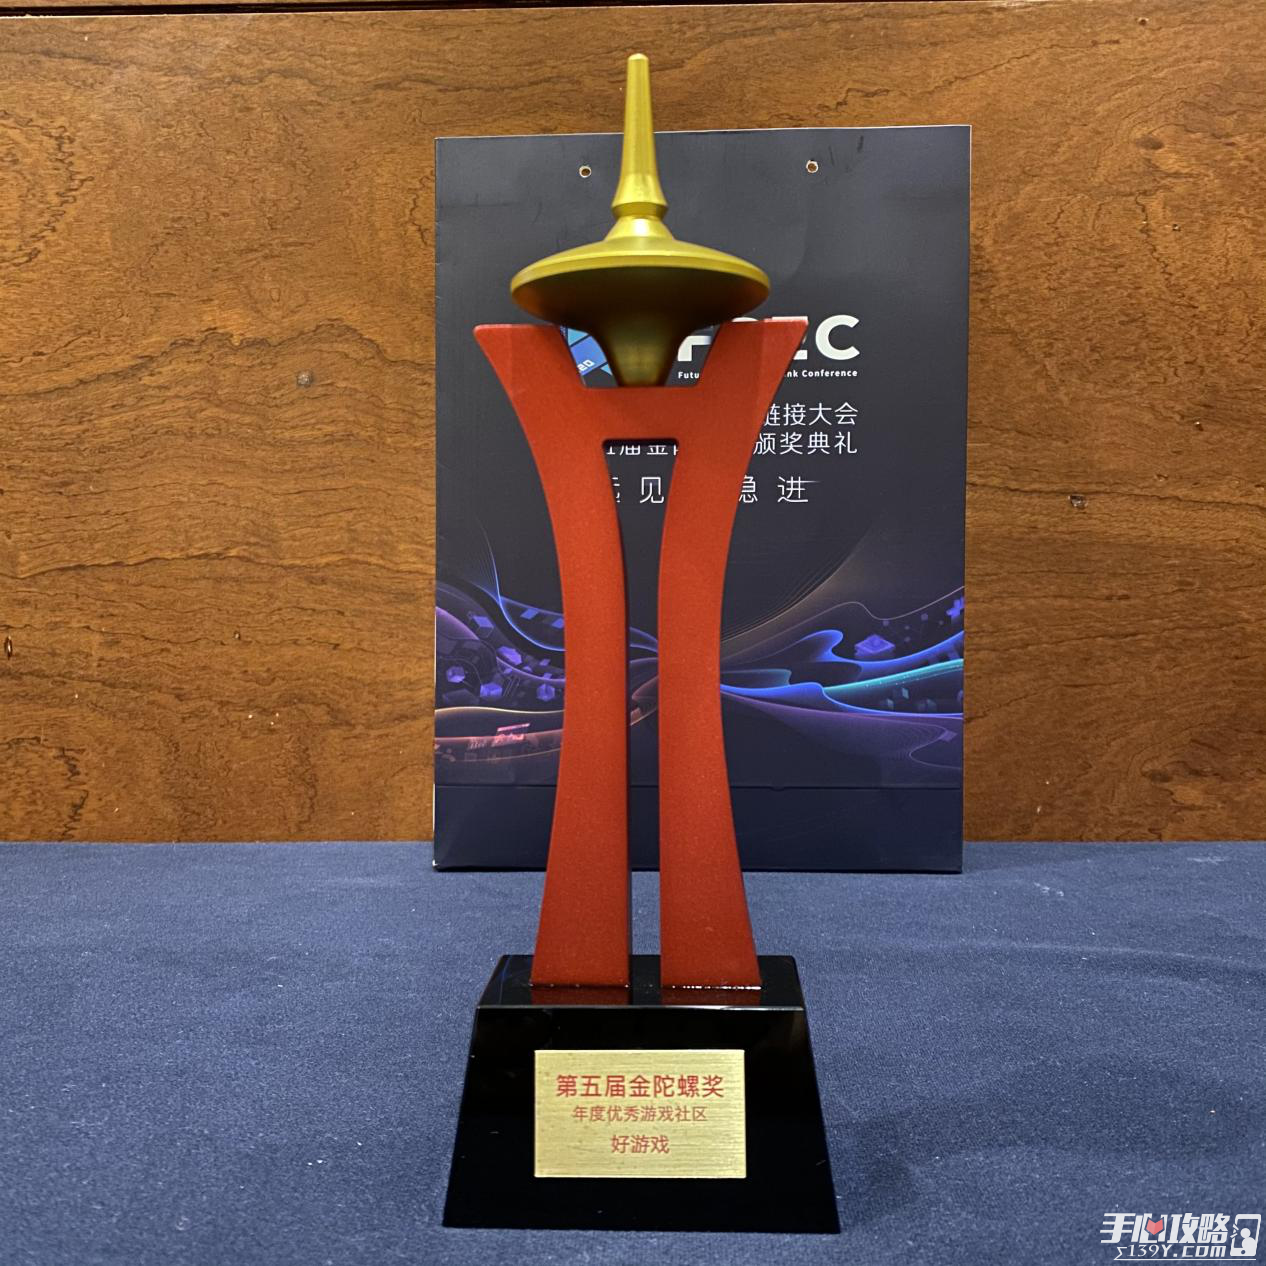 好游戏APP荣获第五届金陀螺奖年度优秀游戏社区2